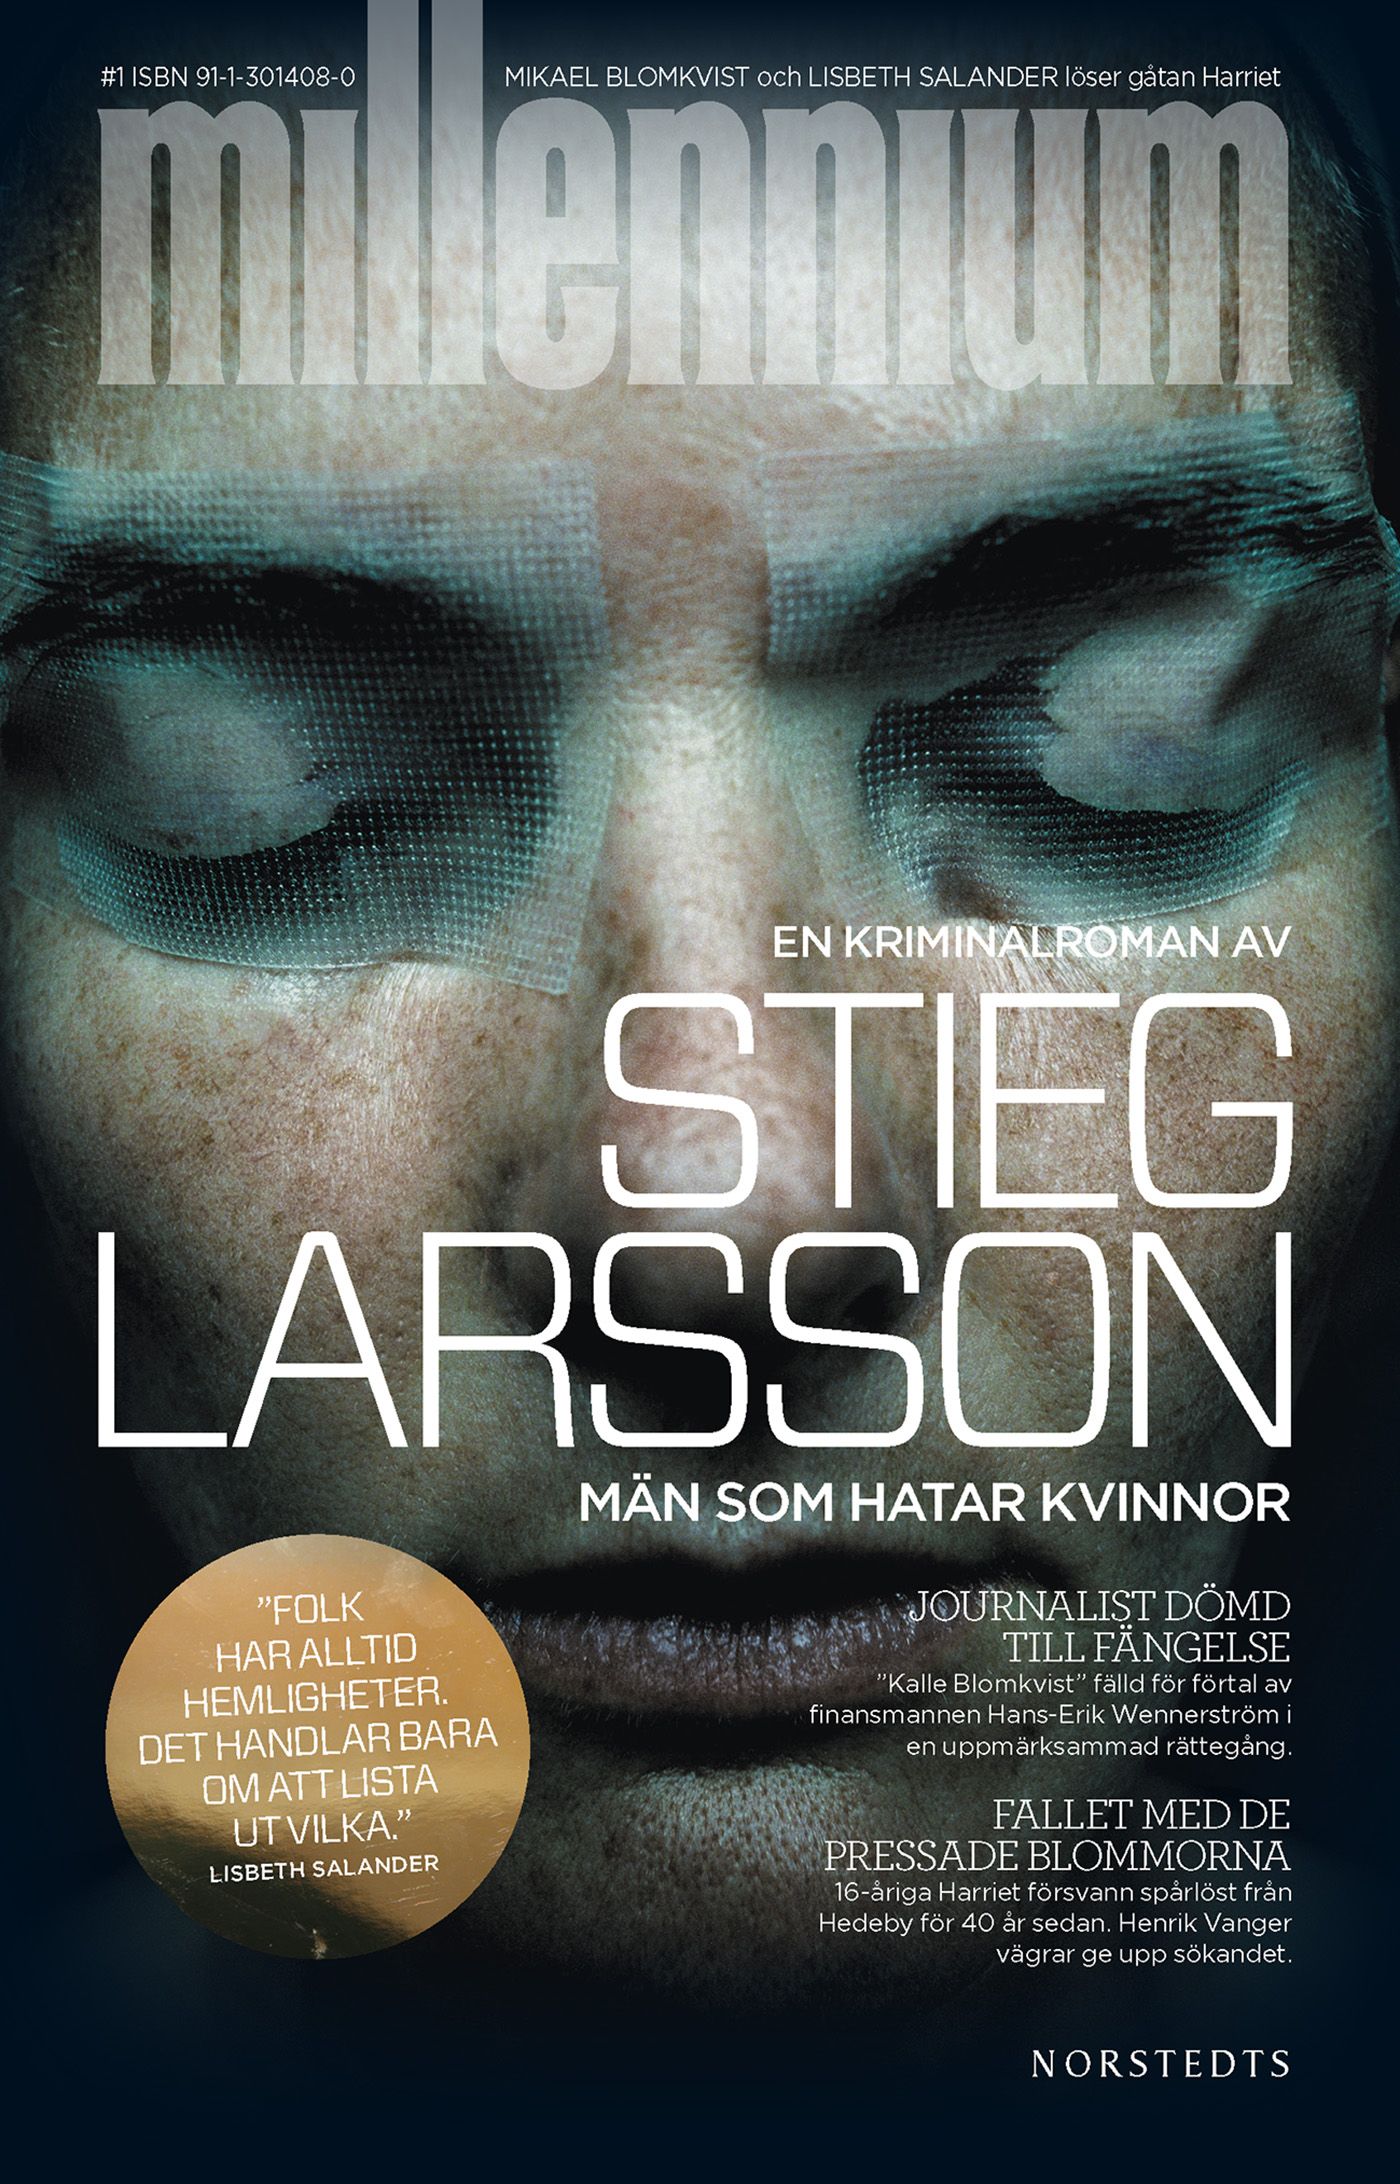 Män som hatar kvinnor, e-bok av Stieg Larsson